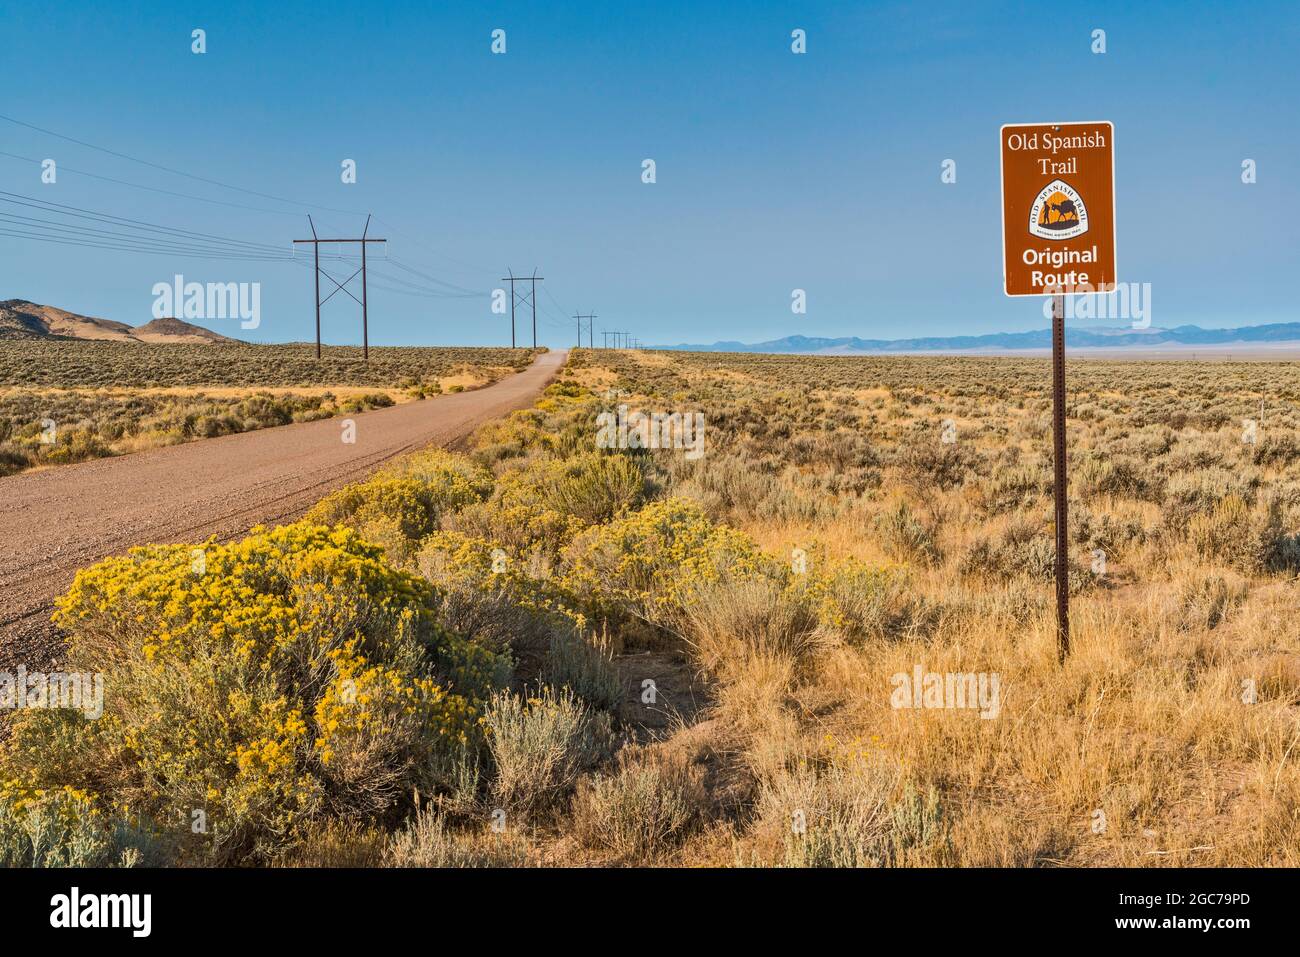 Old Spanish Trail signpost, deserto Escalante, Great Basin Desert, vicino a Cedar City, Utah, STATI UNITI Foto Stock